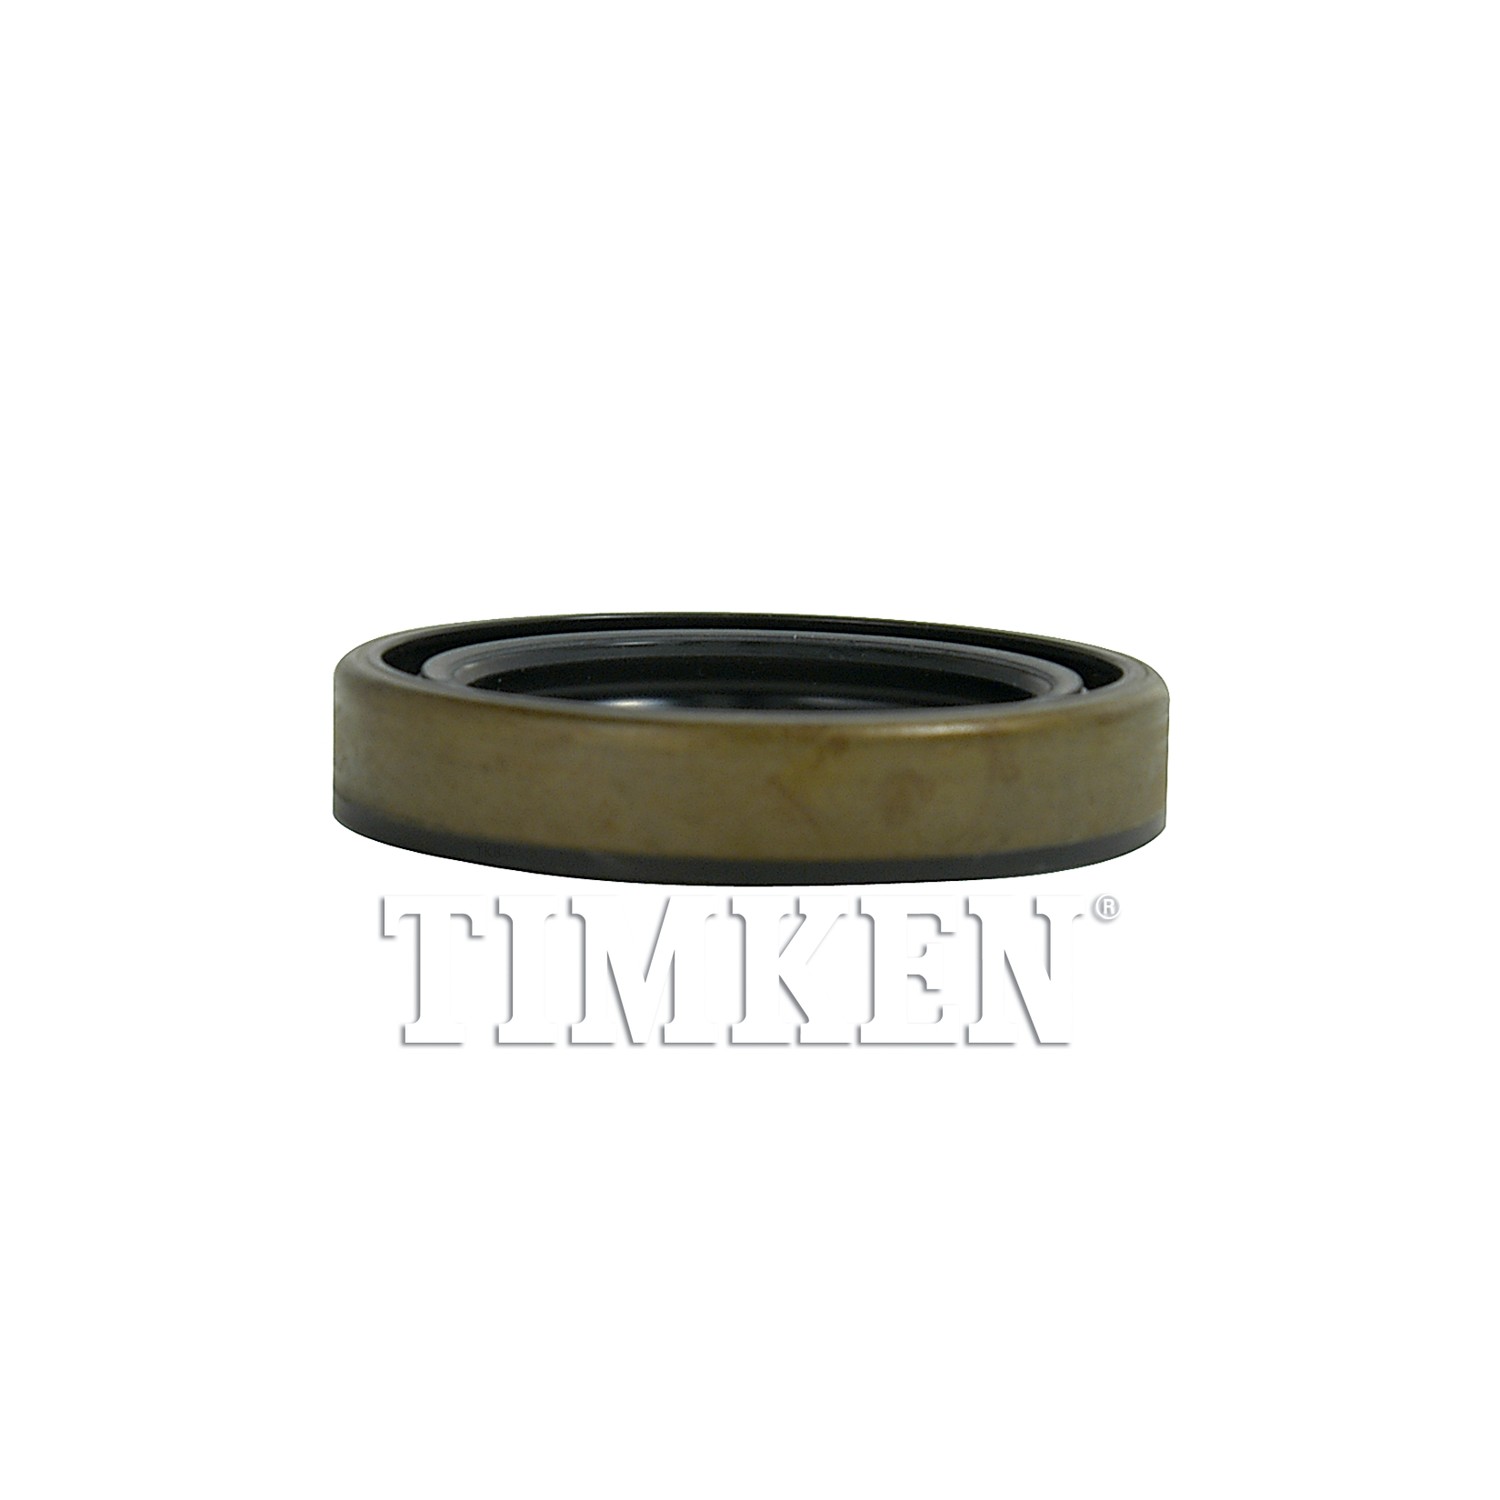 TIMKEN - Transfer Case Input Shaft Seal - TIM 710928